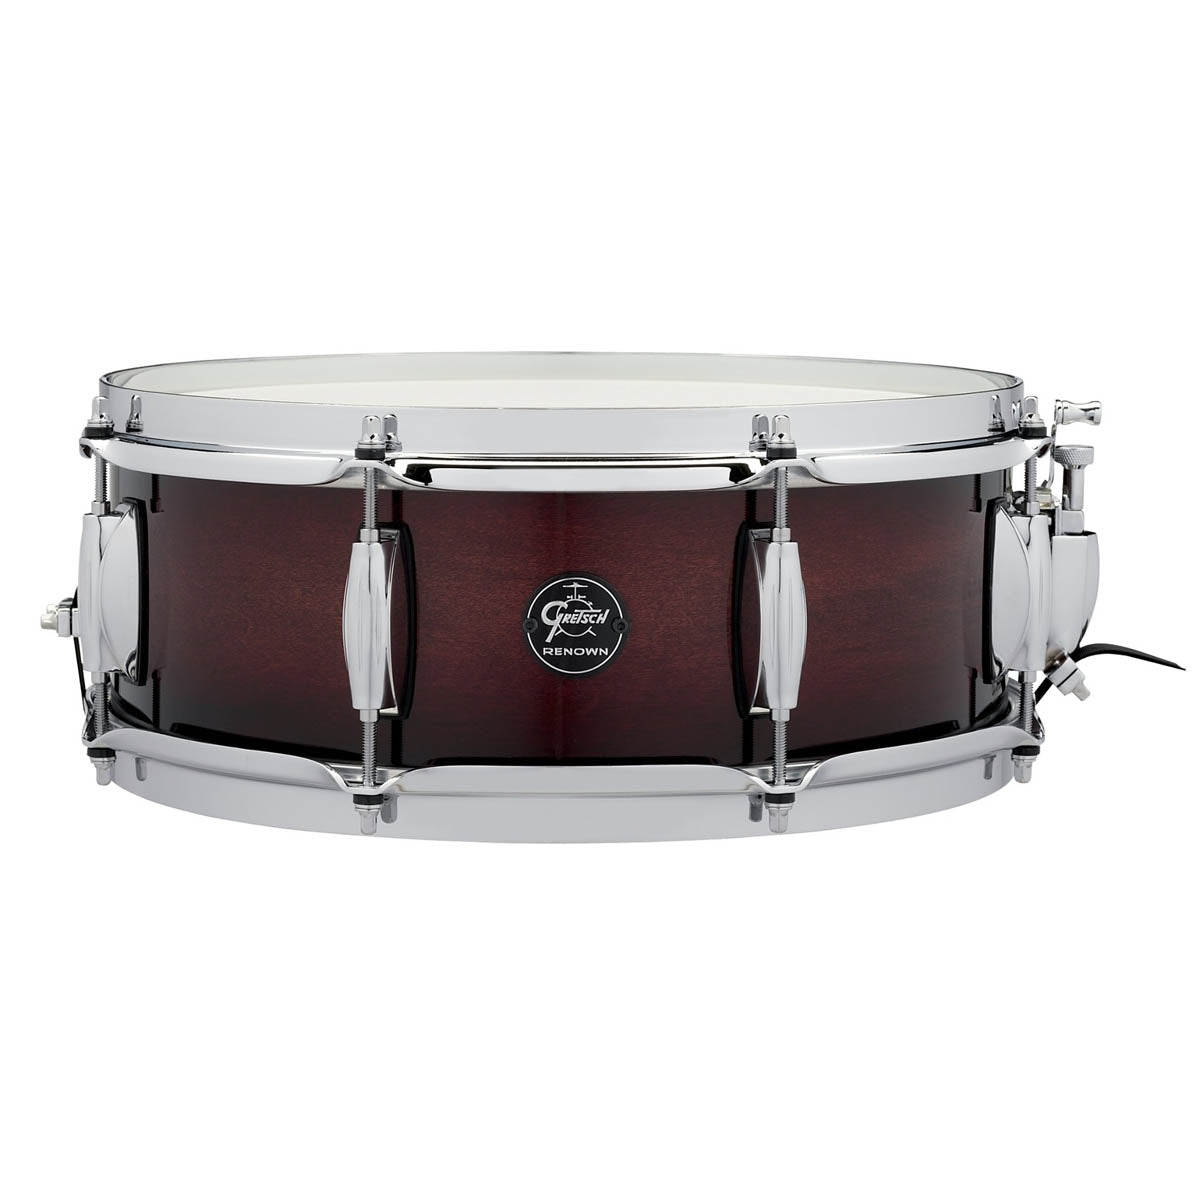 Gretsch Renown Maple 14"x5" Snare Drum in Cherry Burst